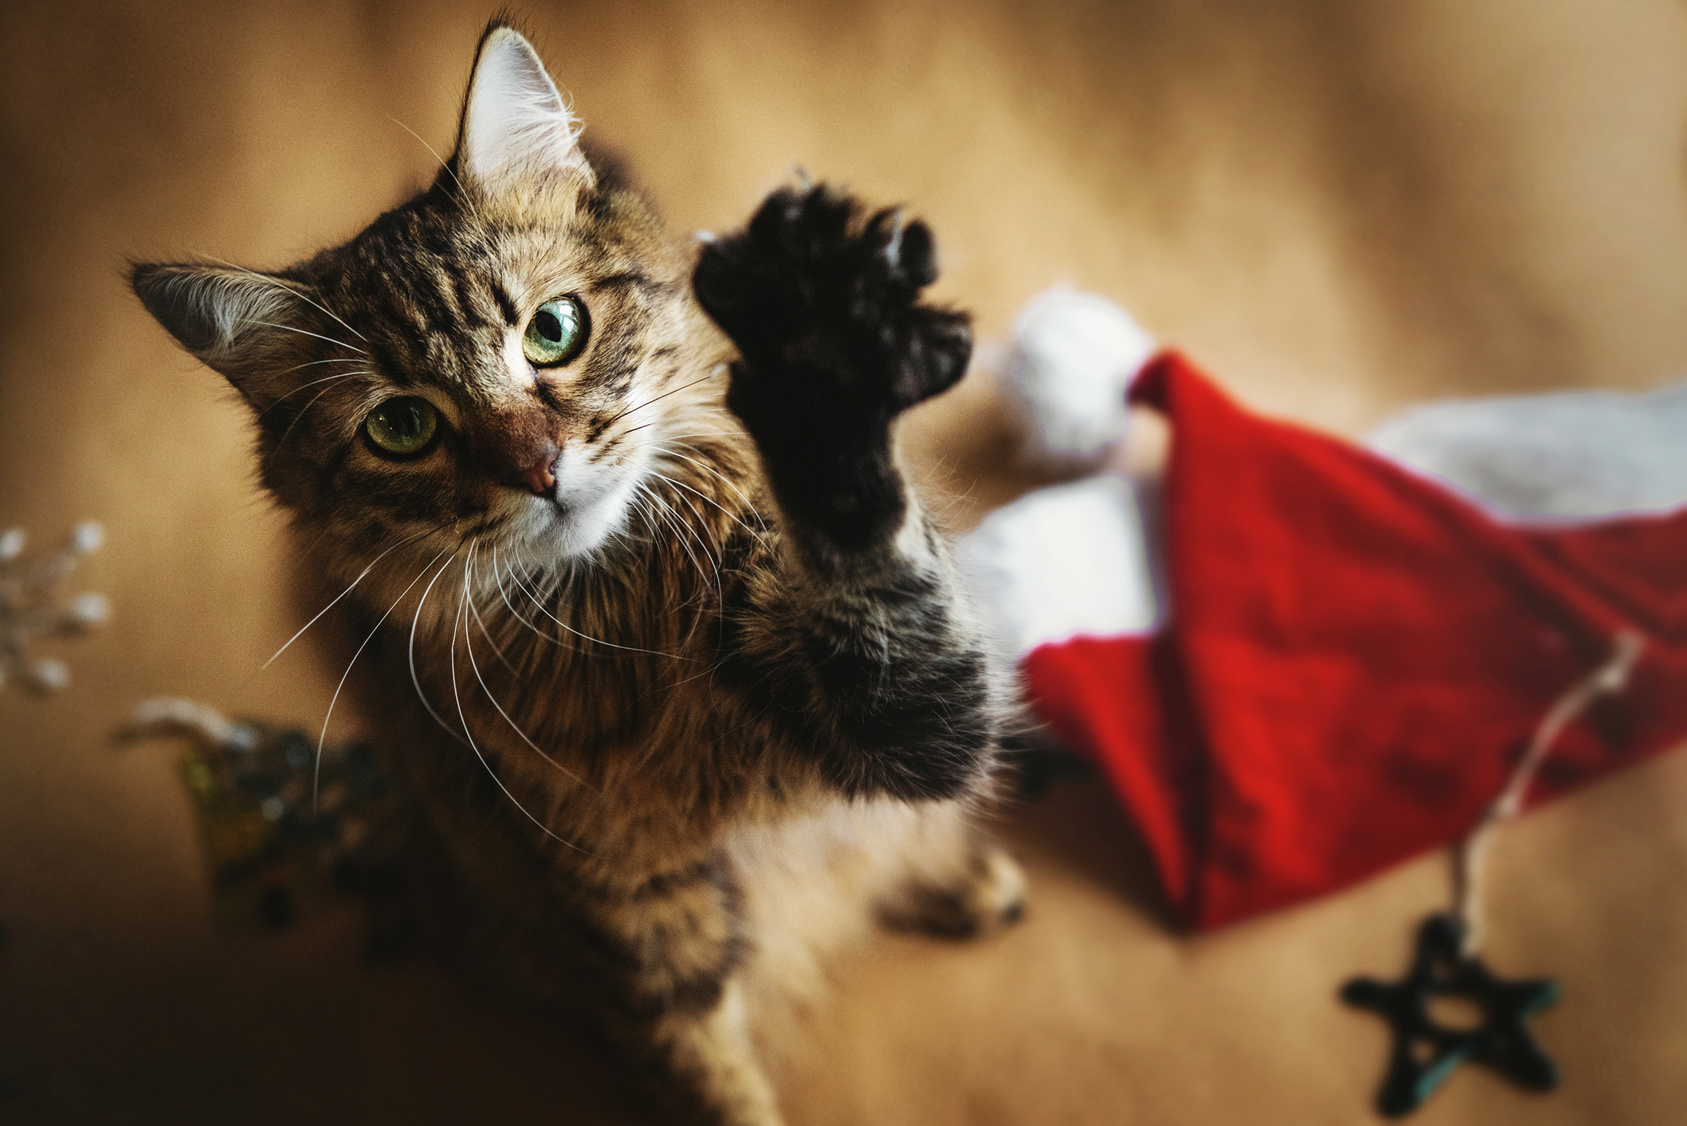 Vestlig Måling Spis aftensmad 5 tips til en sikker & hyggelig jul med din kat | zooplus.dk